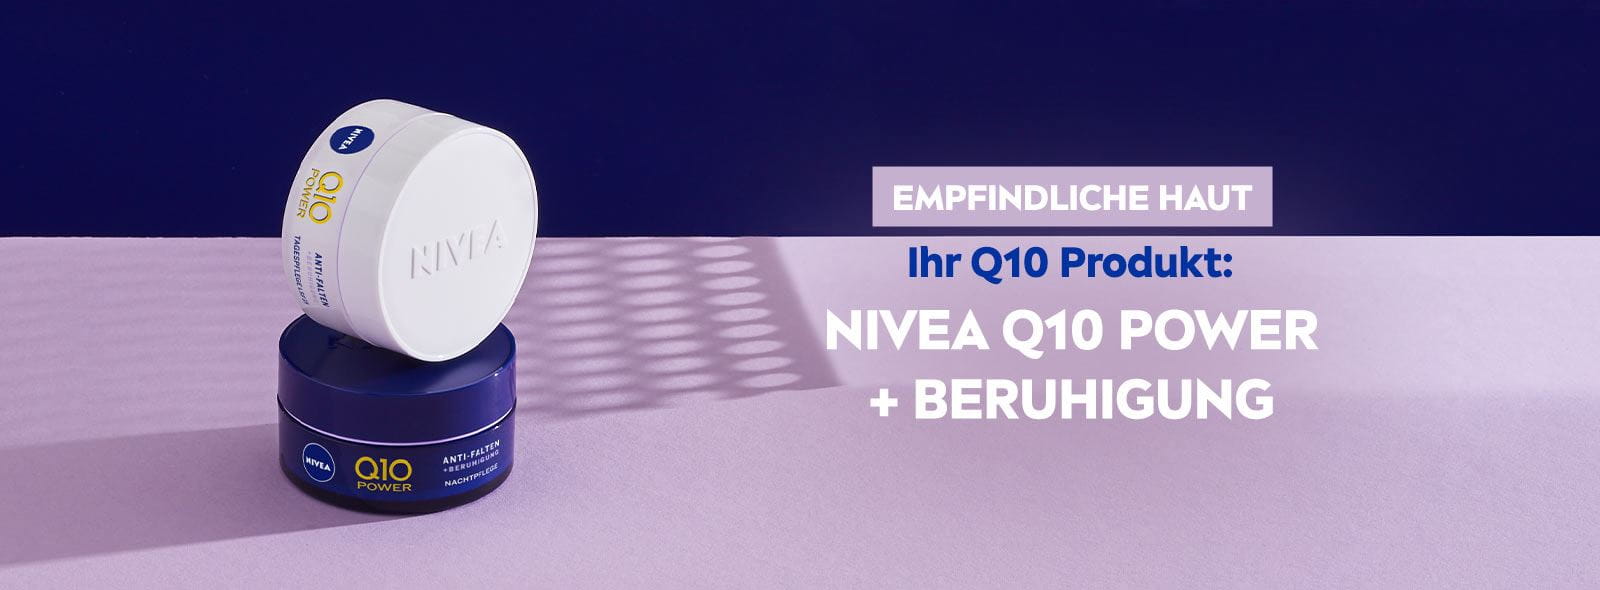 NIVEA Q10 für empfindliche Haut